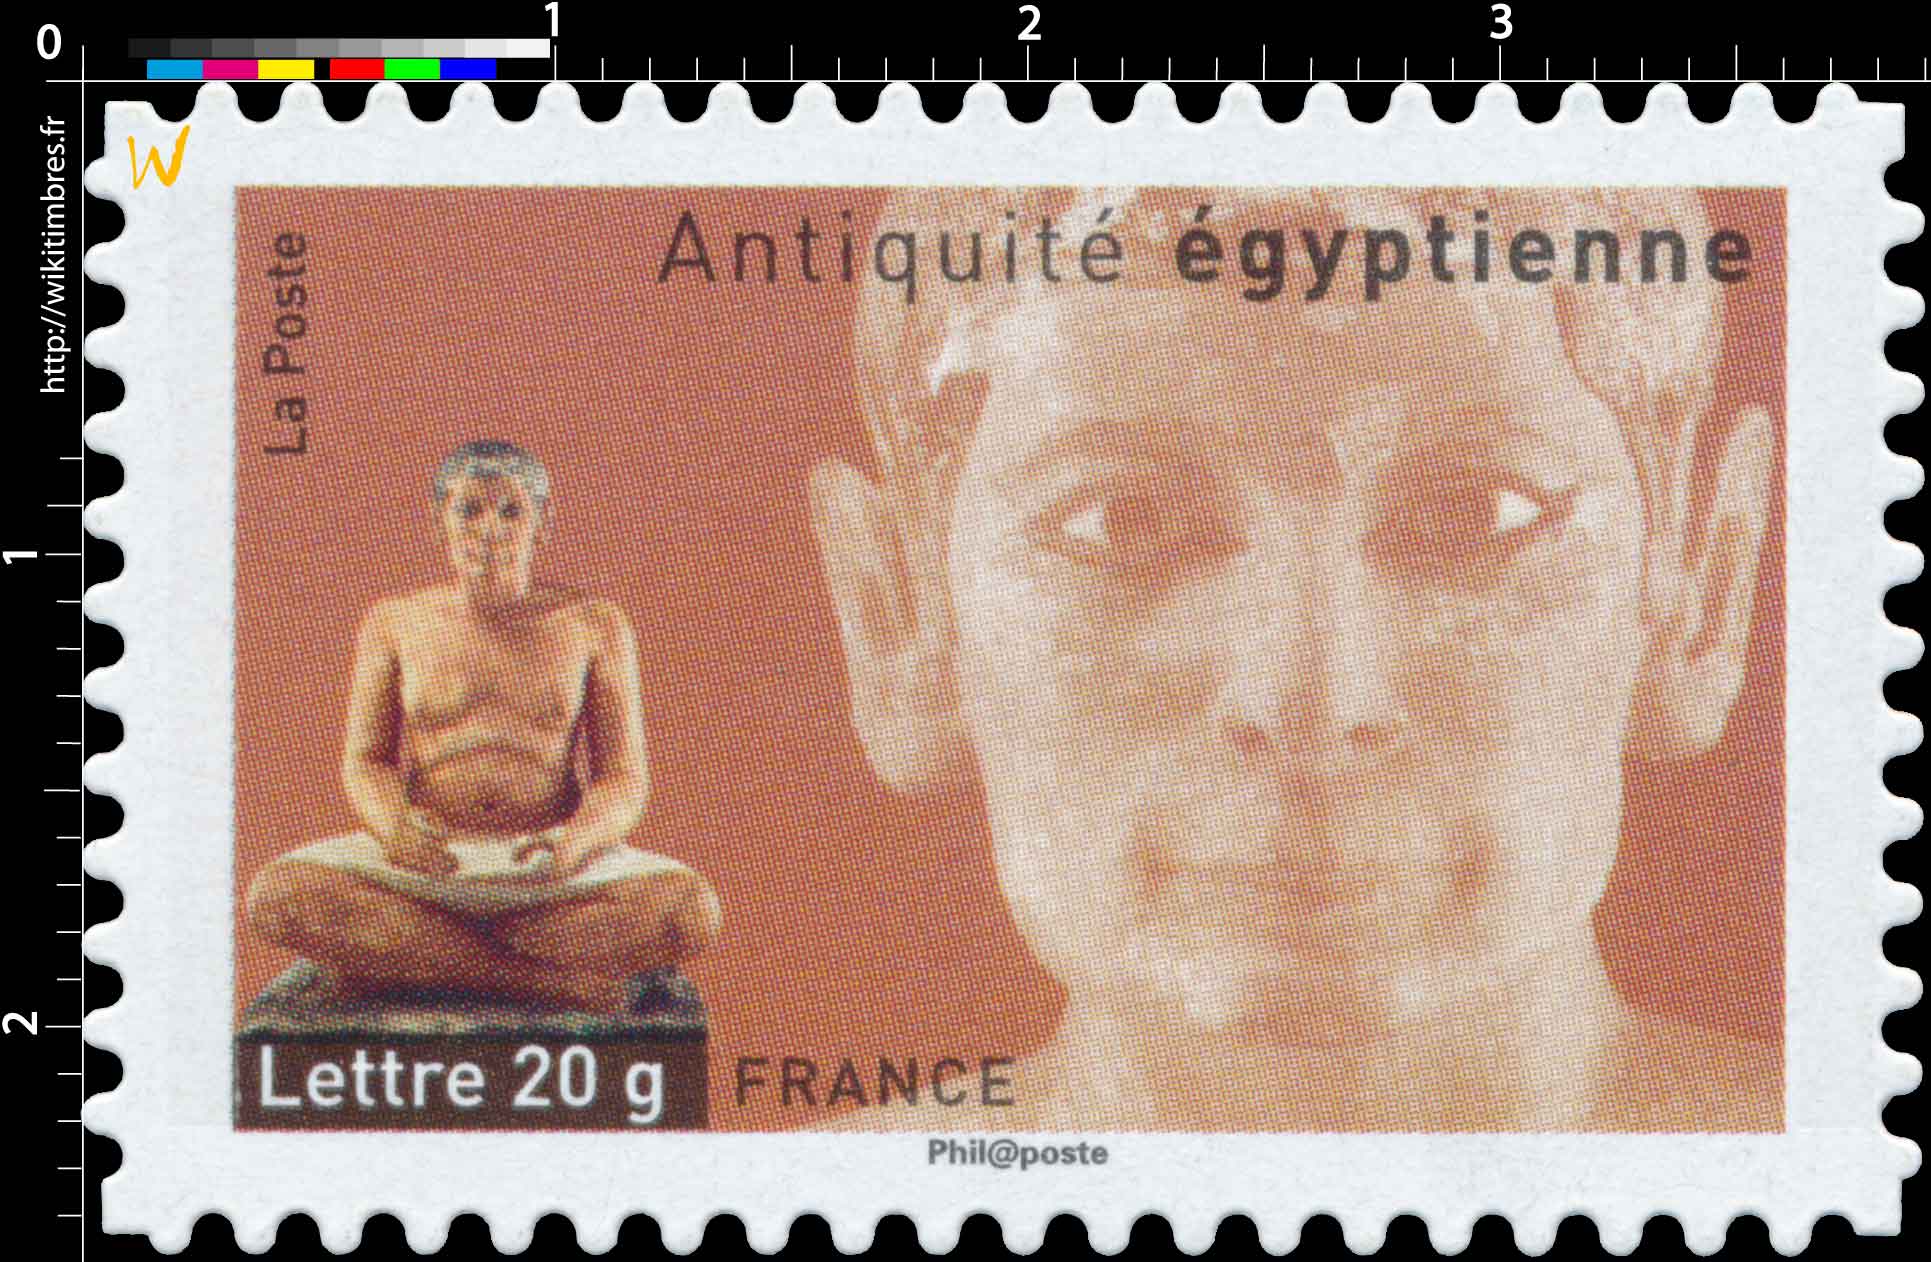 Antiquités égyptienne